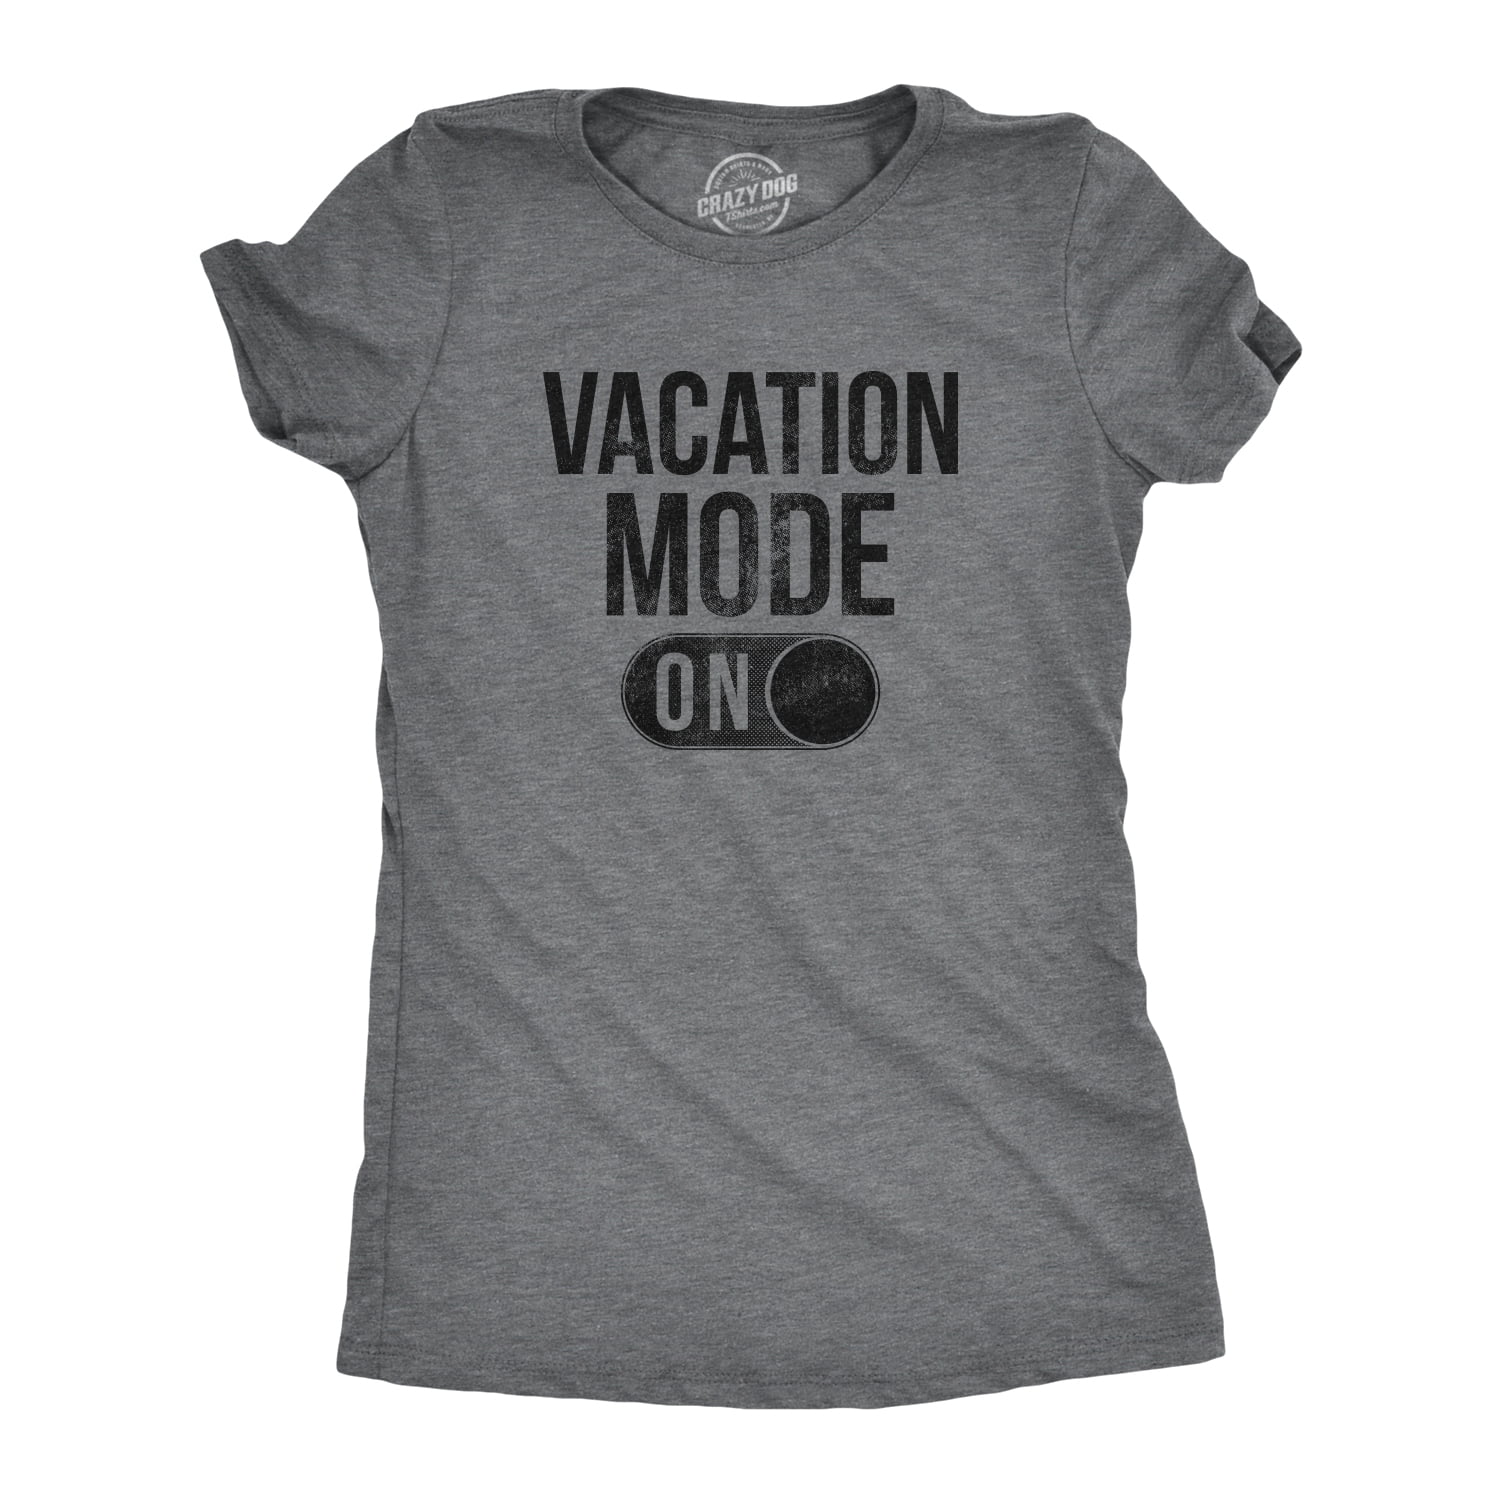 Vacation Mode Shirt Vacation Shirt Vacation Tee Vacay Shirt